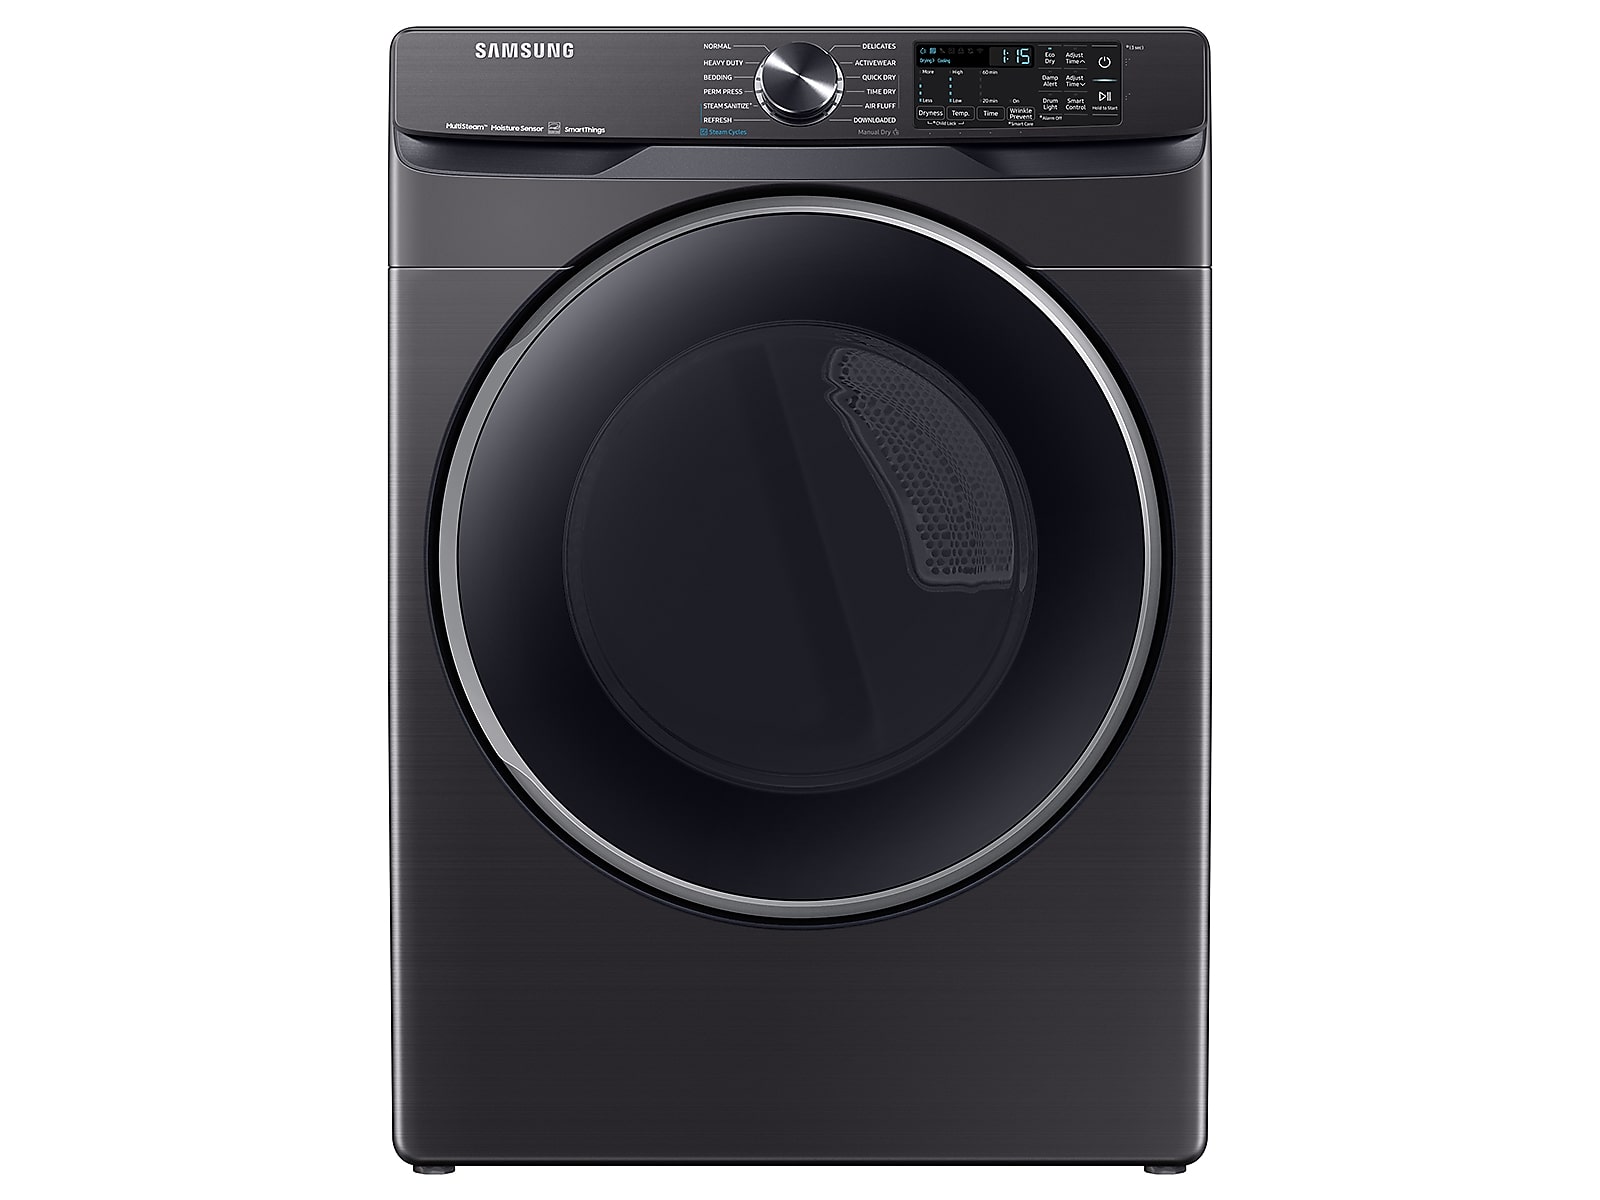 Samsung 7.5 cu. ft. Smart Electric Dryer with Steam Sanitize+ in Brushed Black(DVE50A8500V/A3)